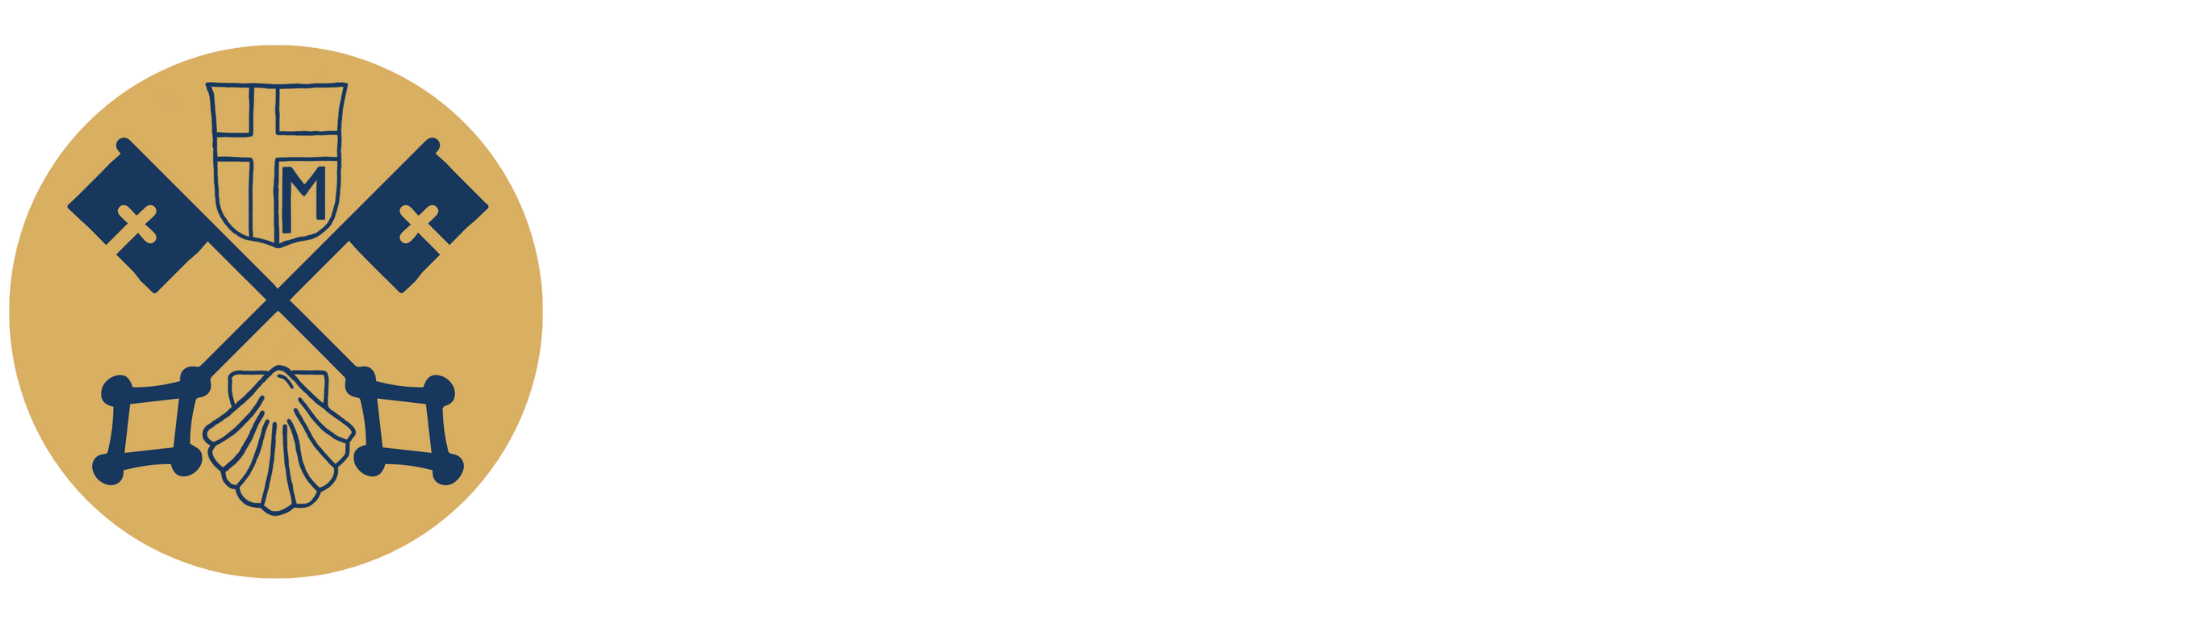 Institute of Catholic Humanism